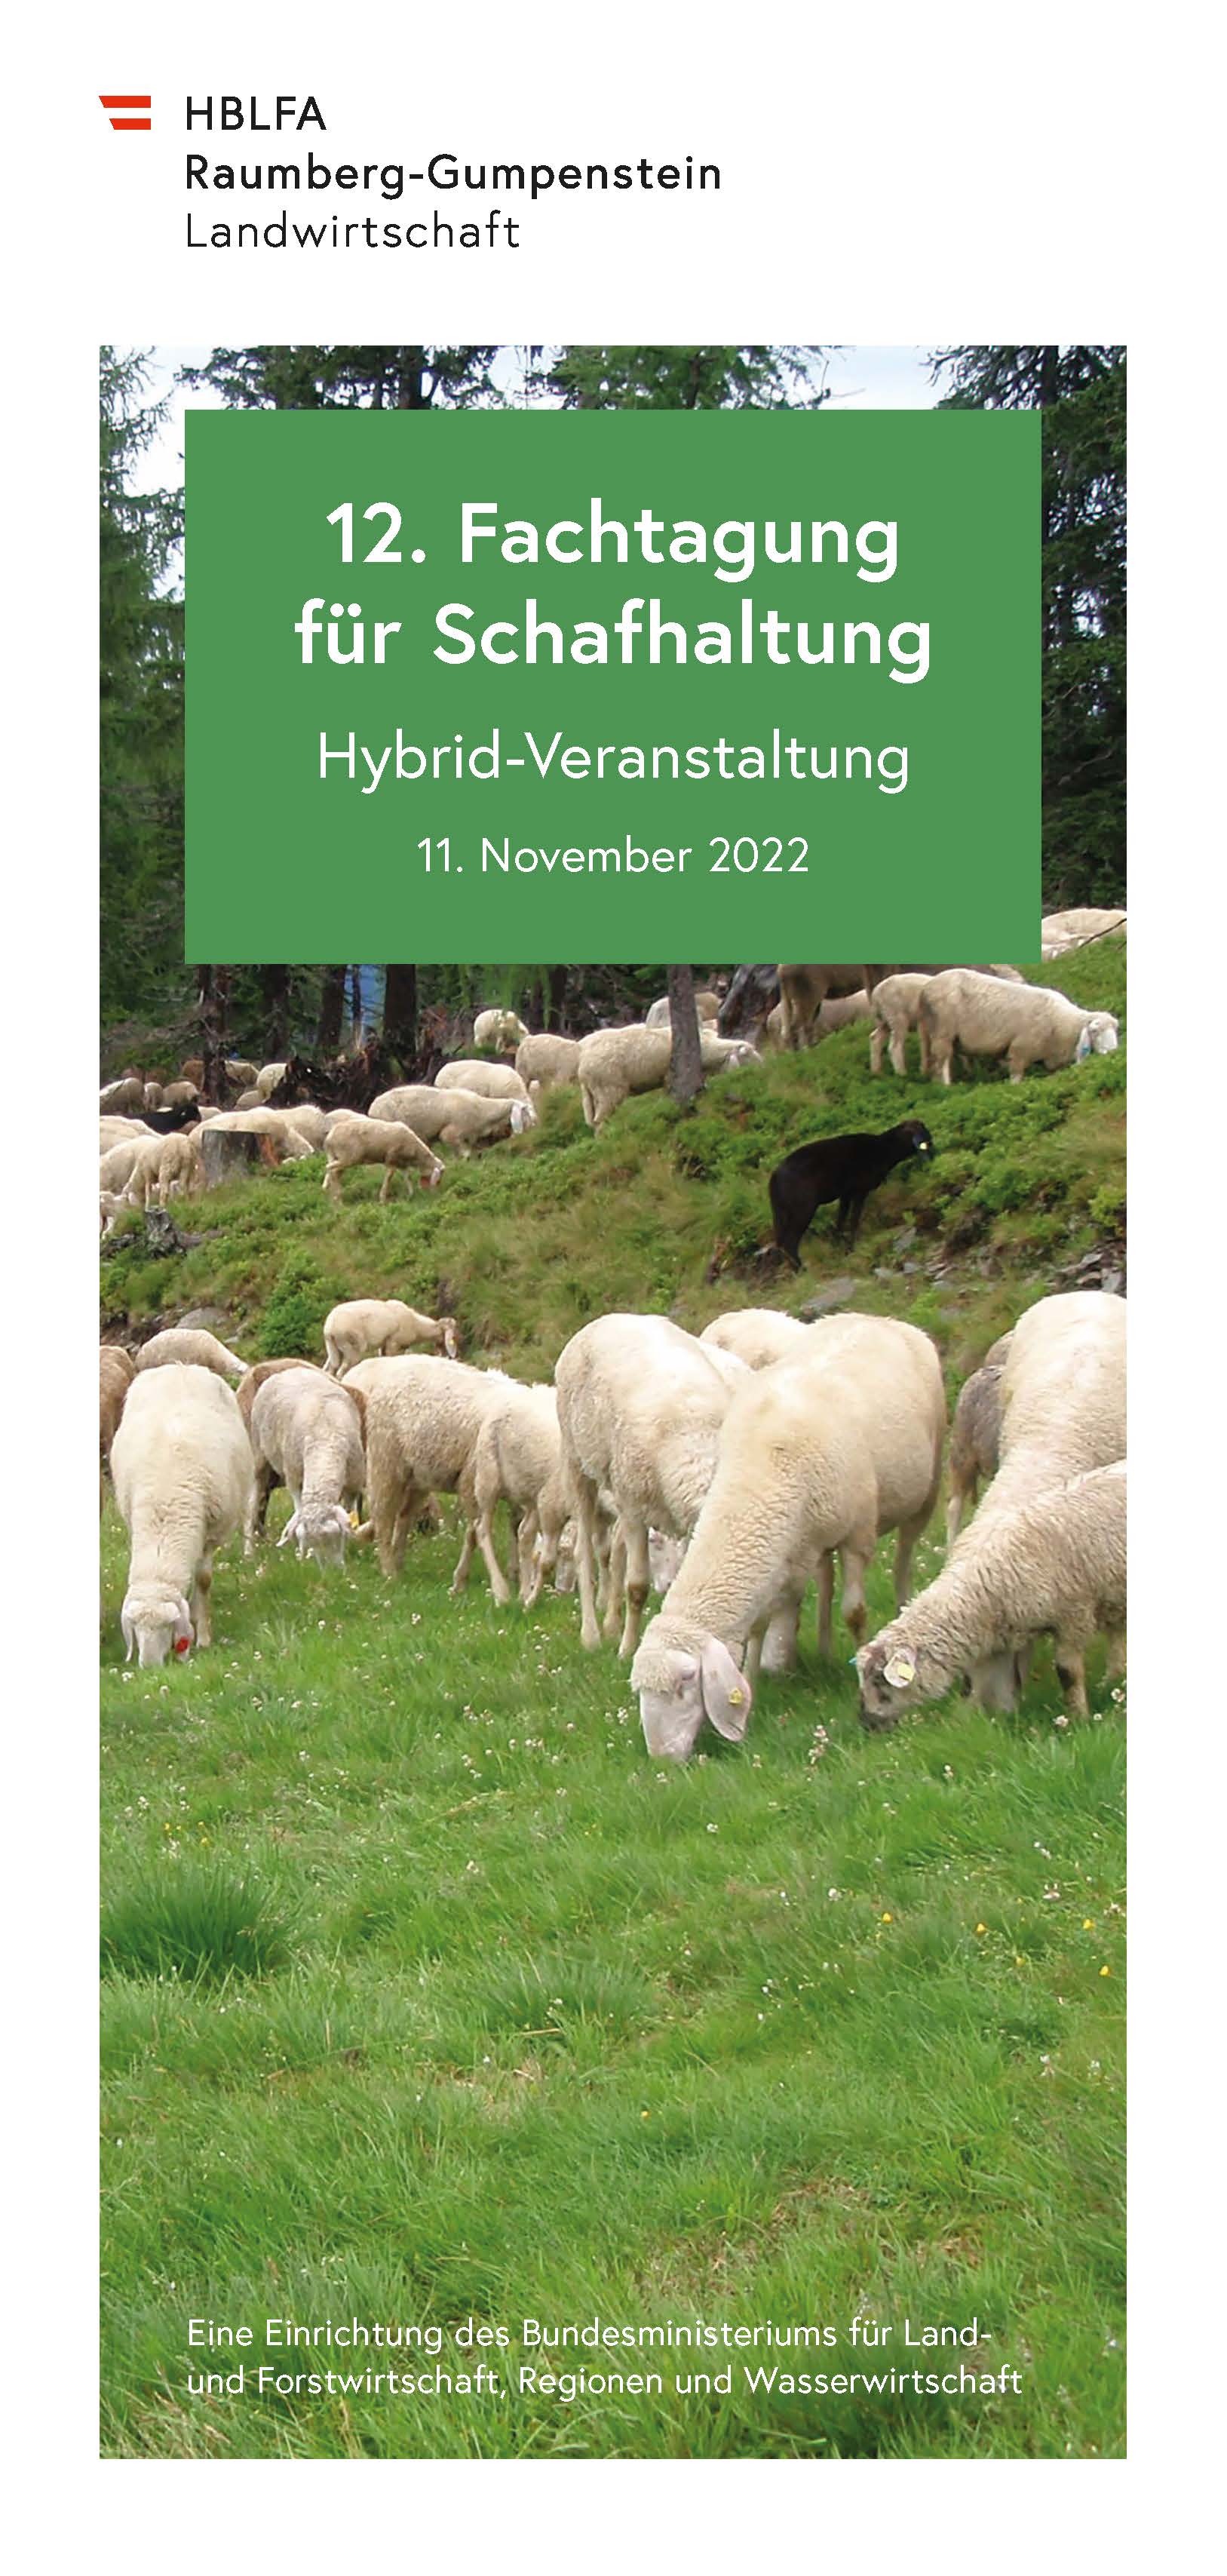 12. Fachtagung für Schafhaltung 2022